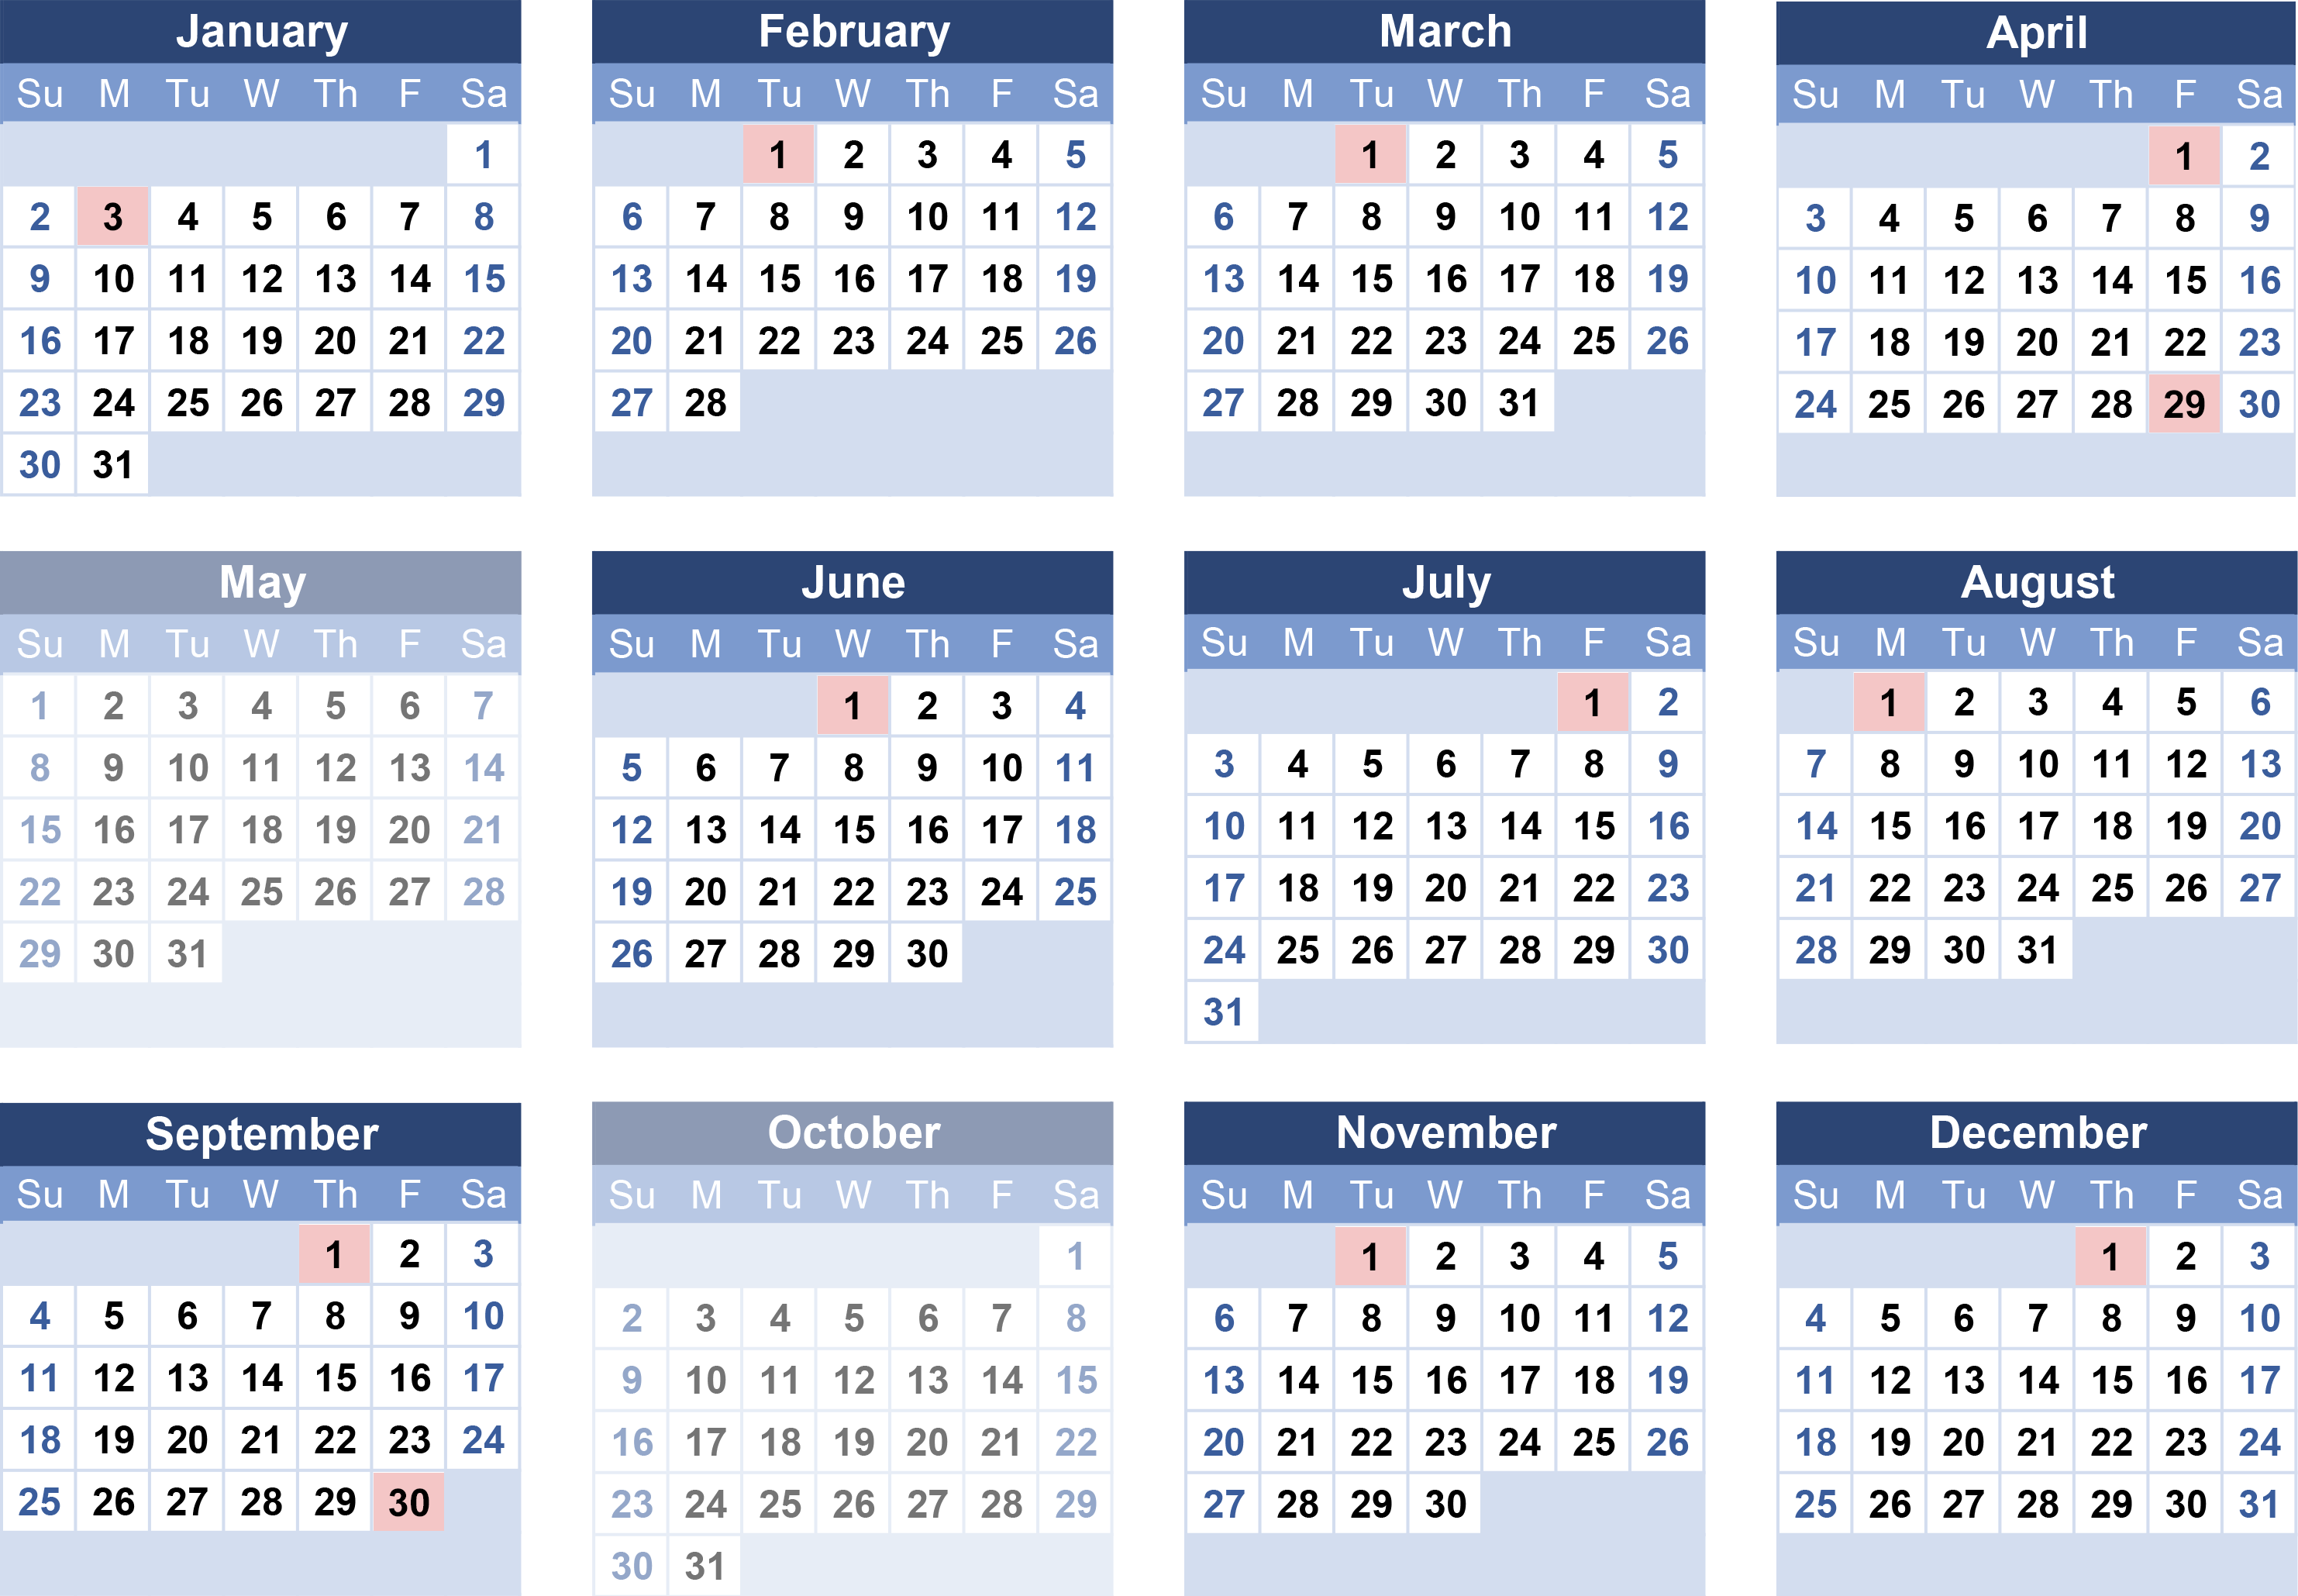 2022 Benefit Payment Calendar